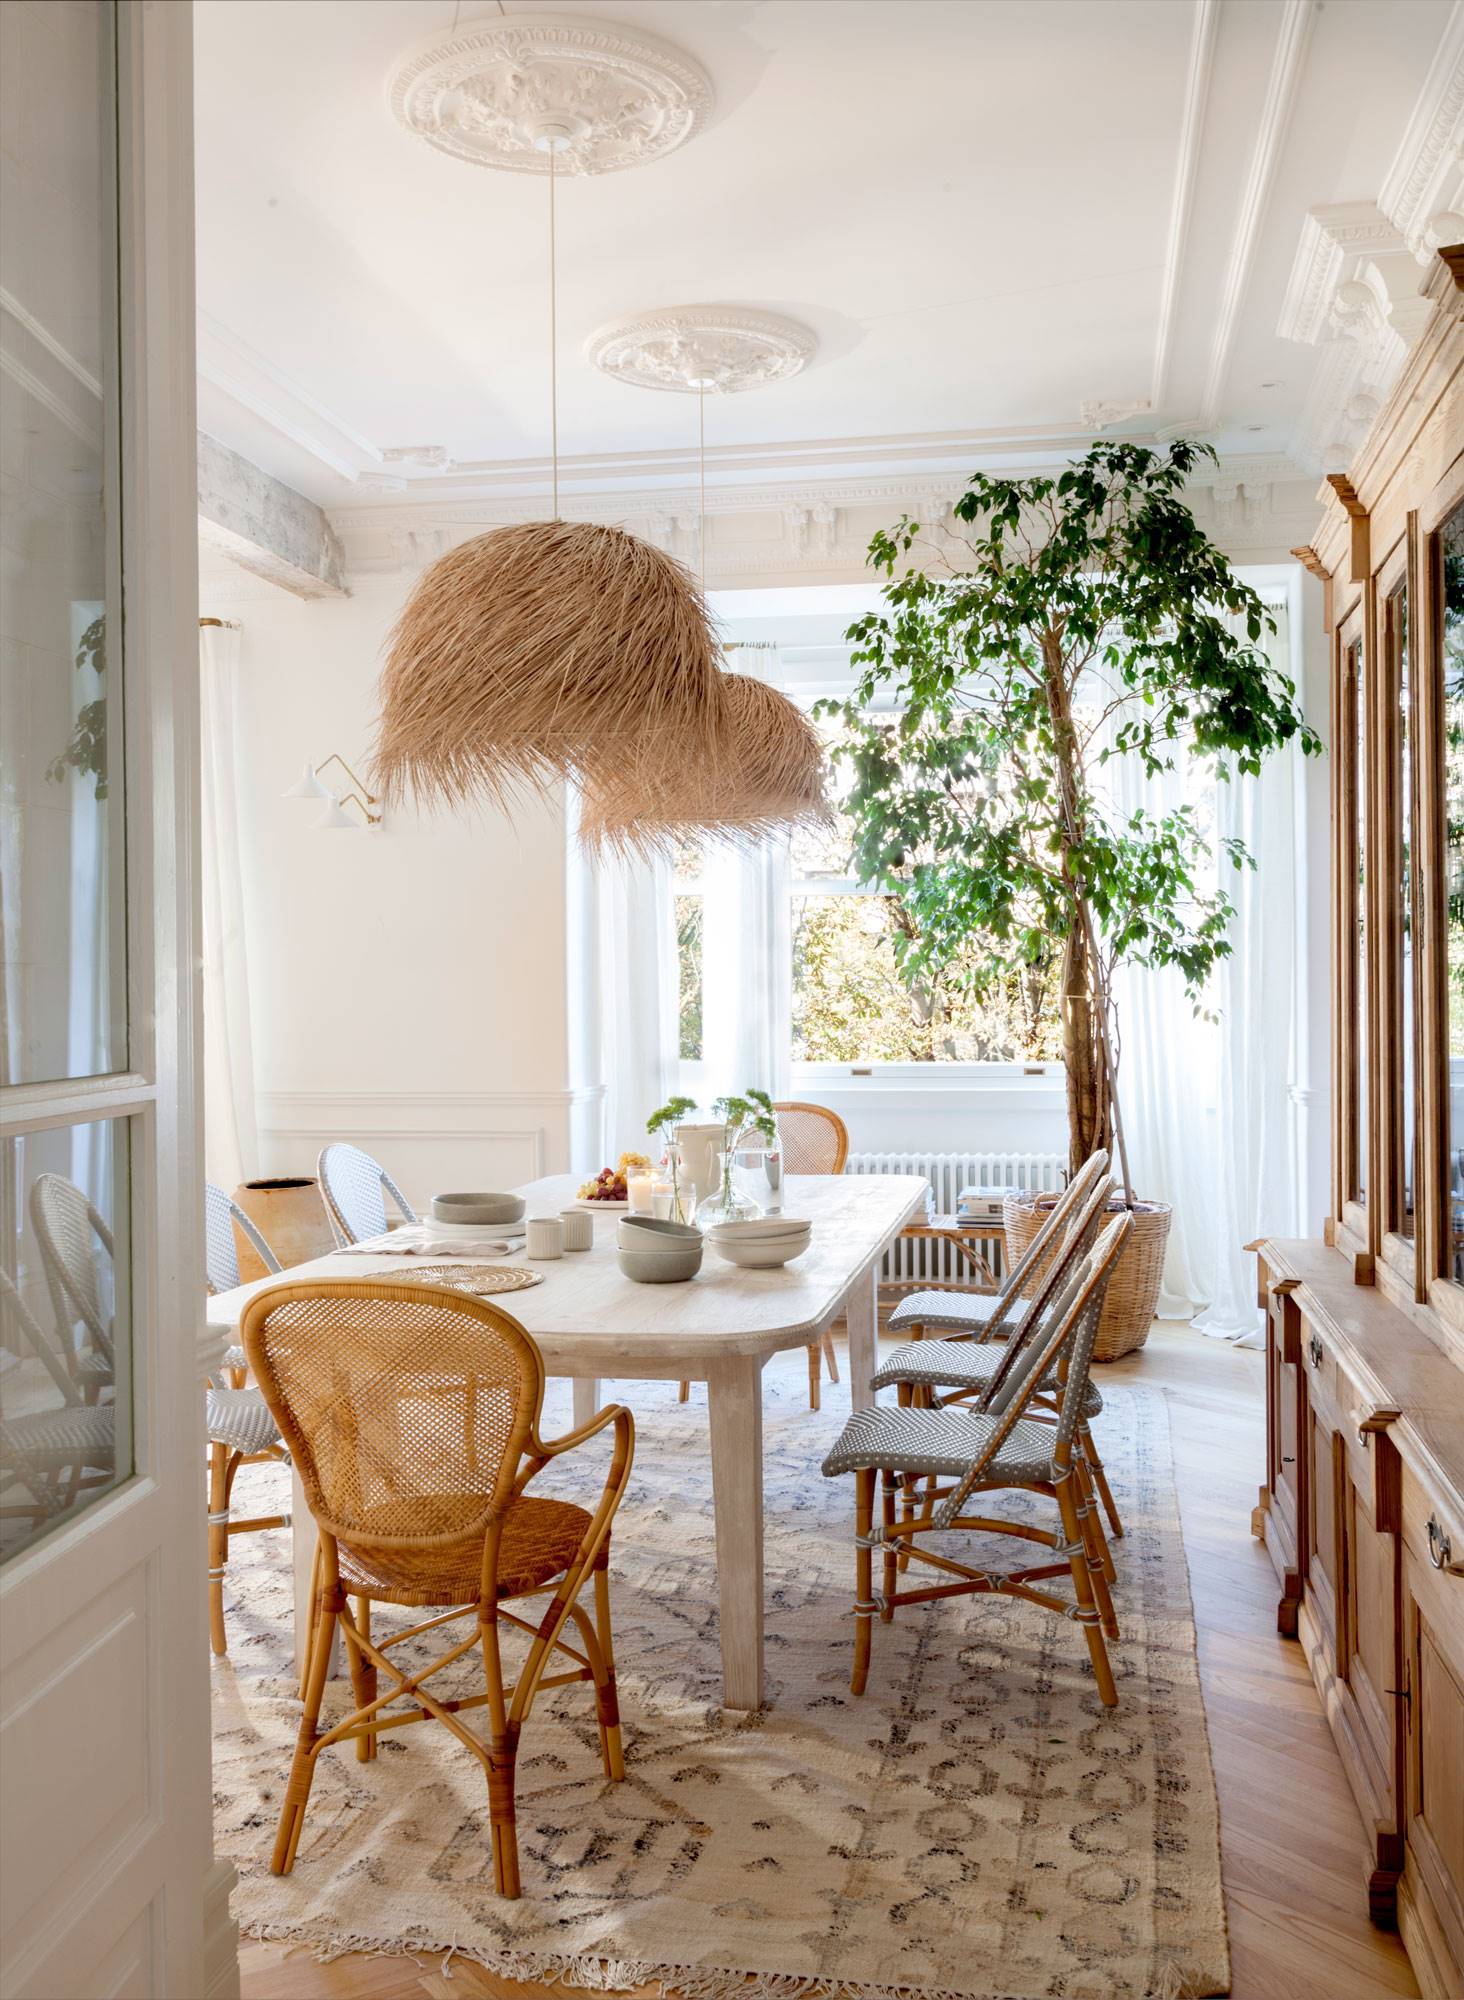 Comedor con techo clásico con molduras y rosetones y muebles de fibras naturales. 